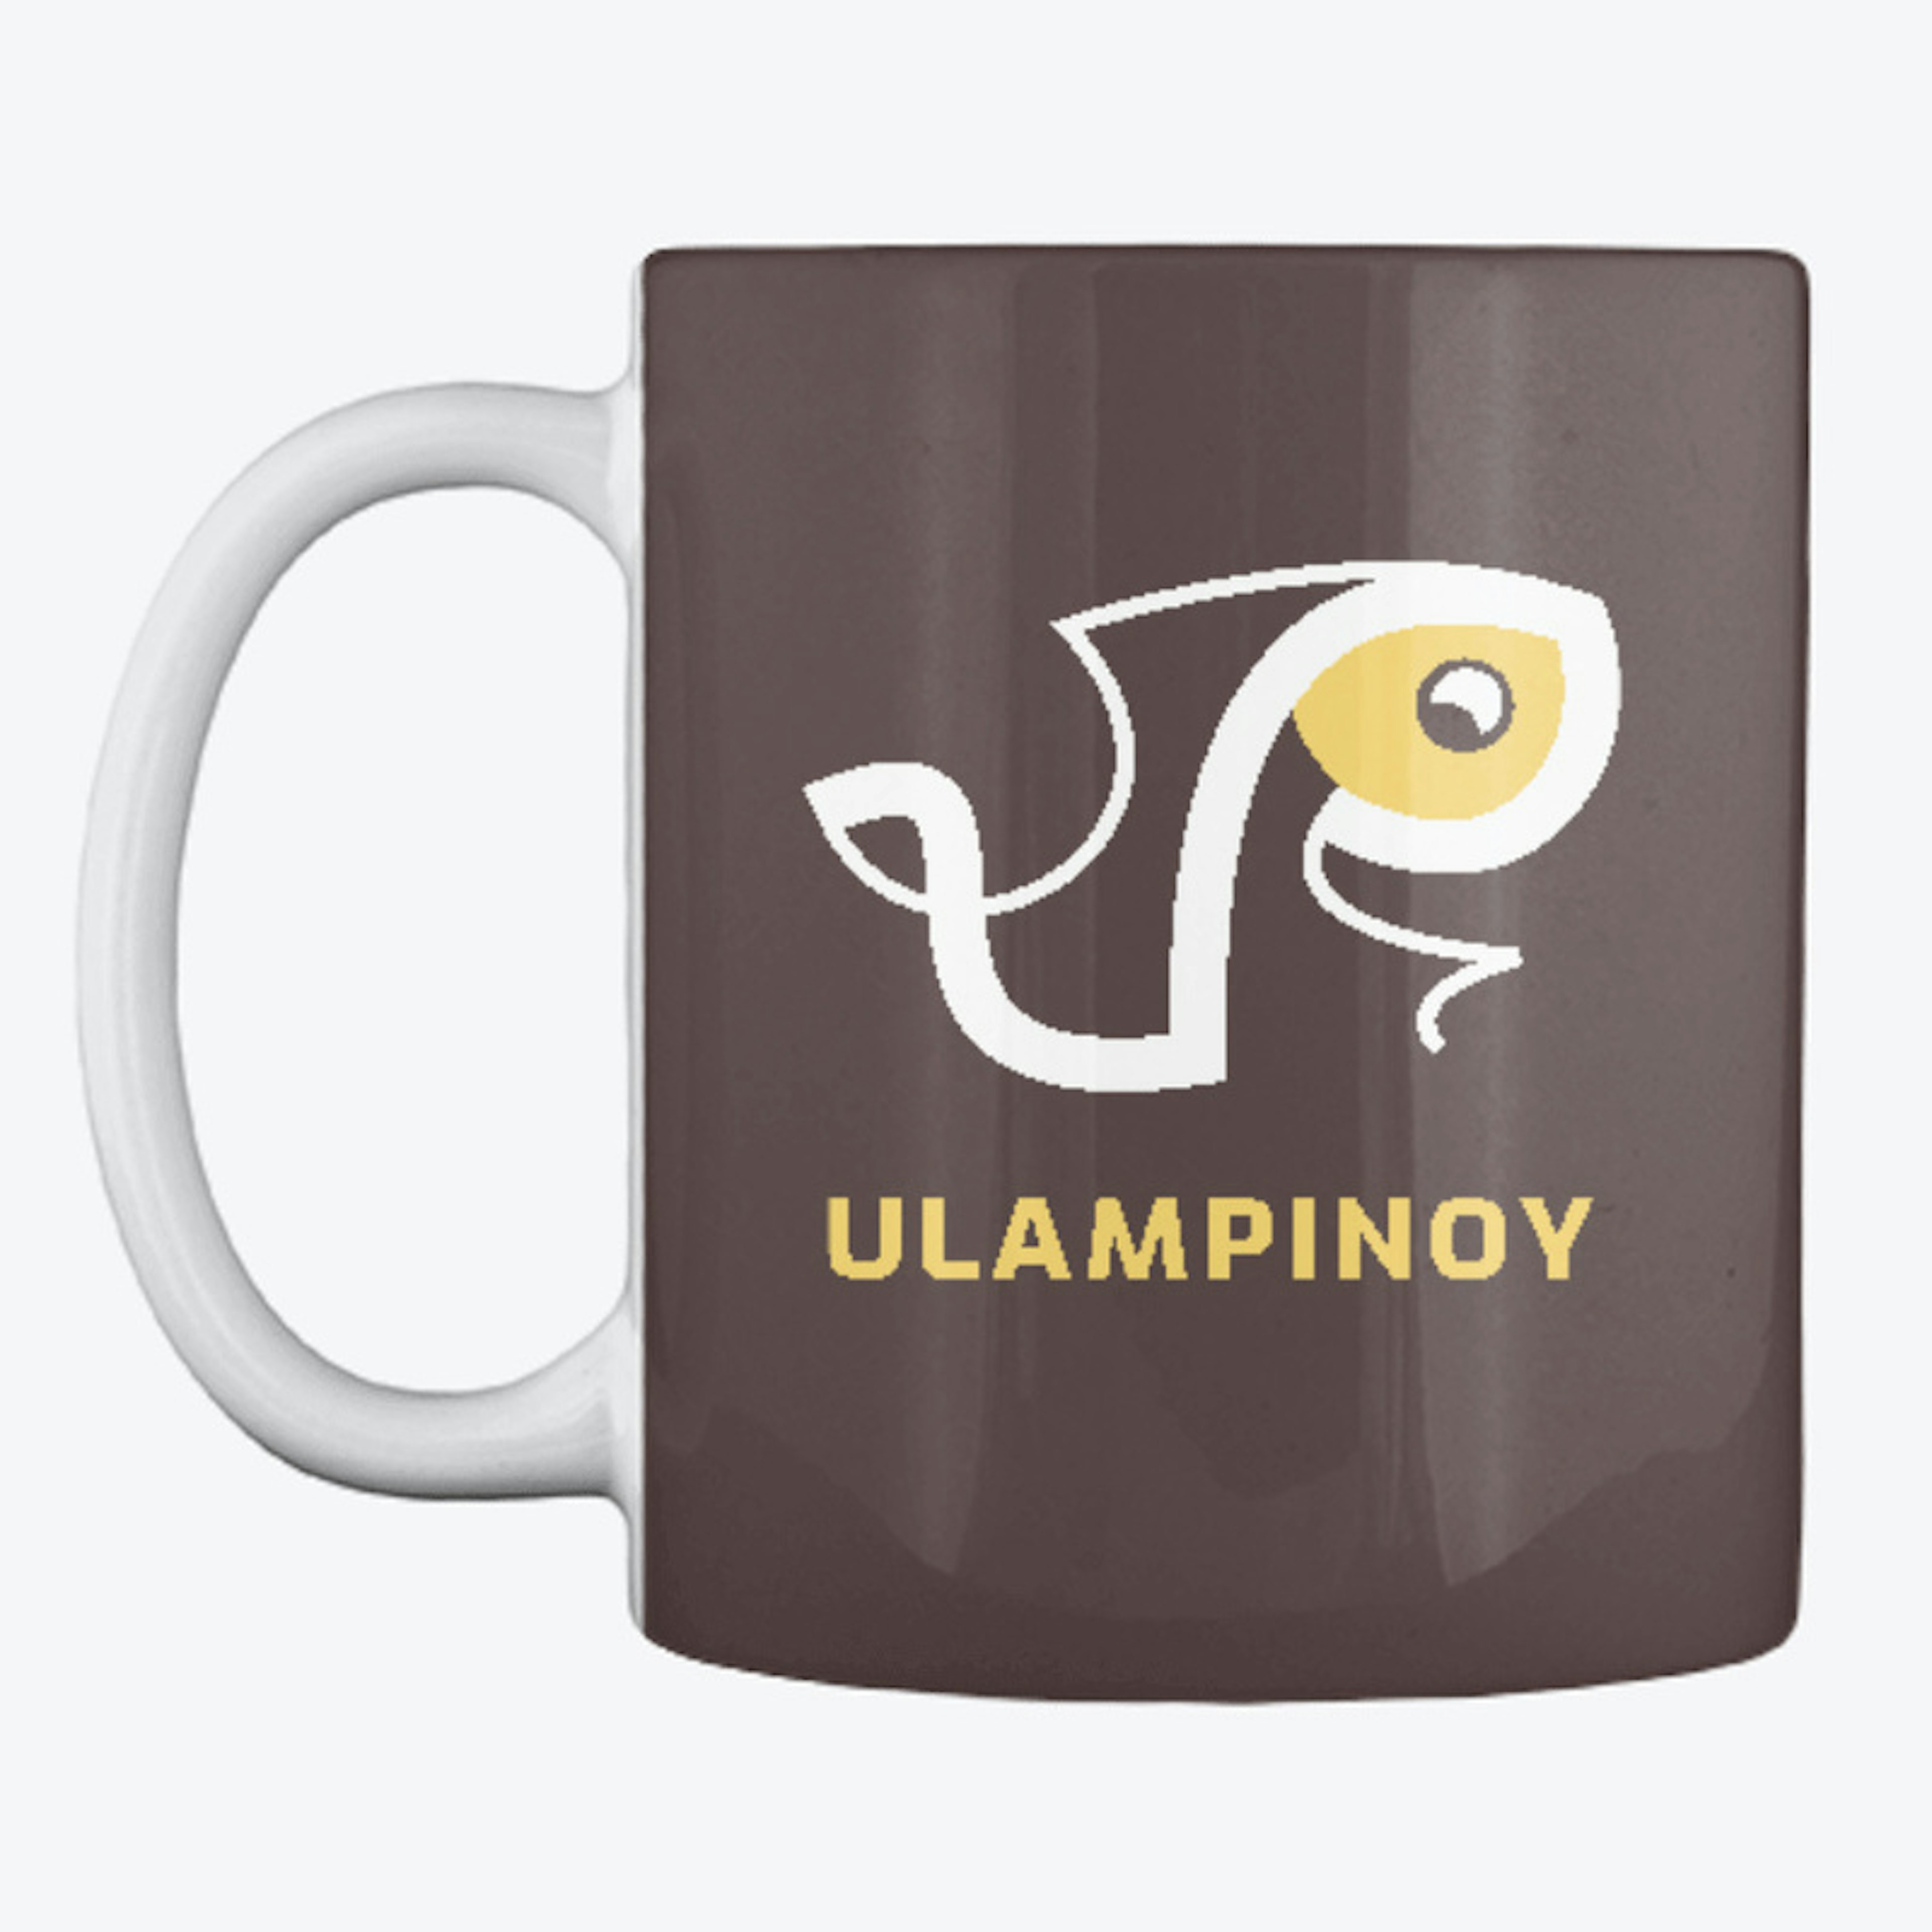 Ulampinoy Mug